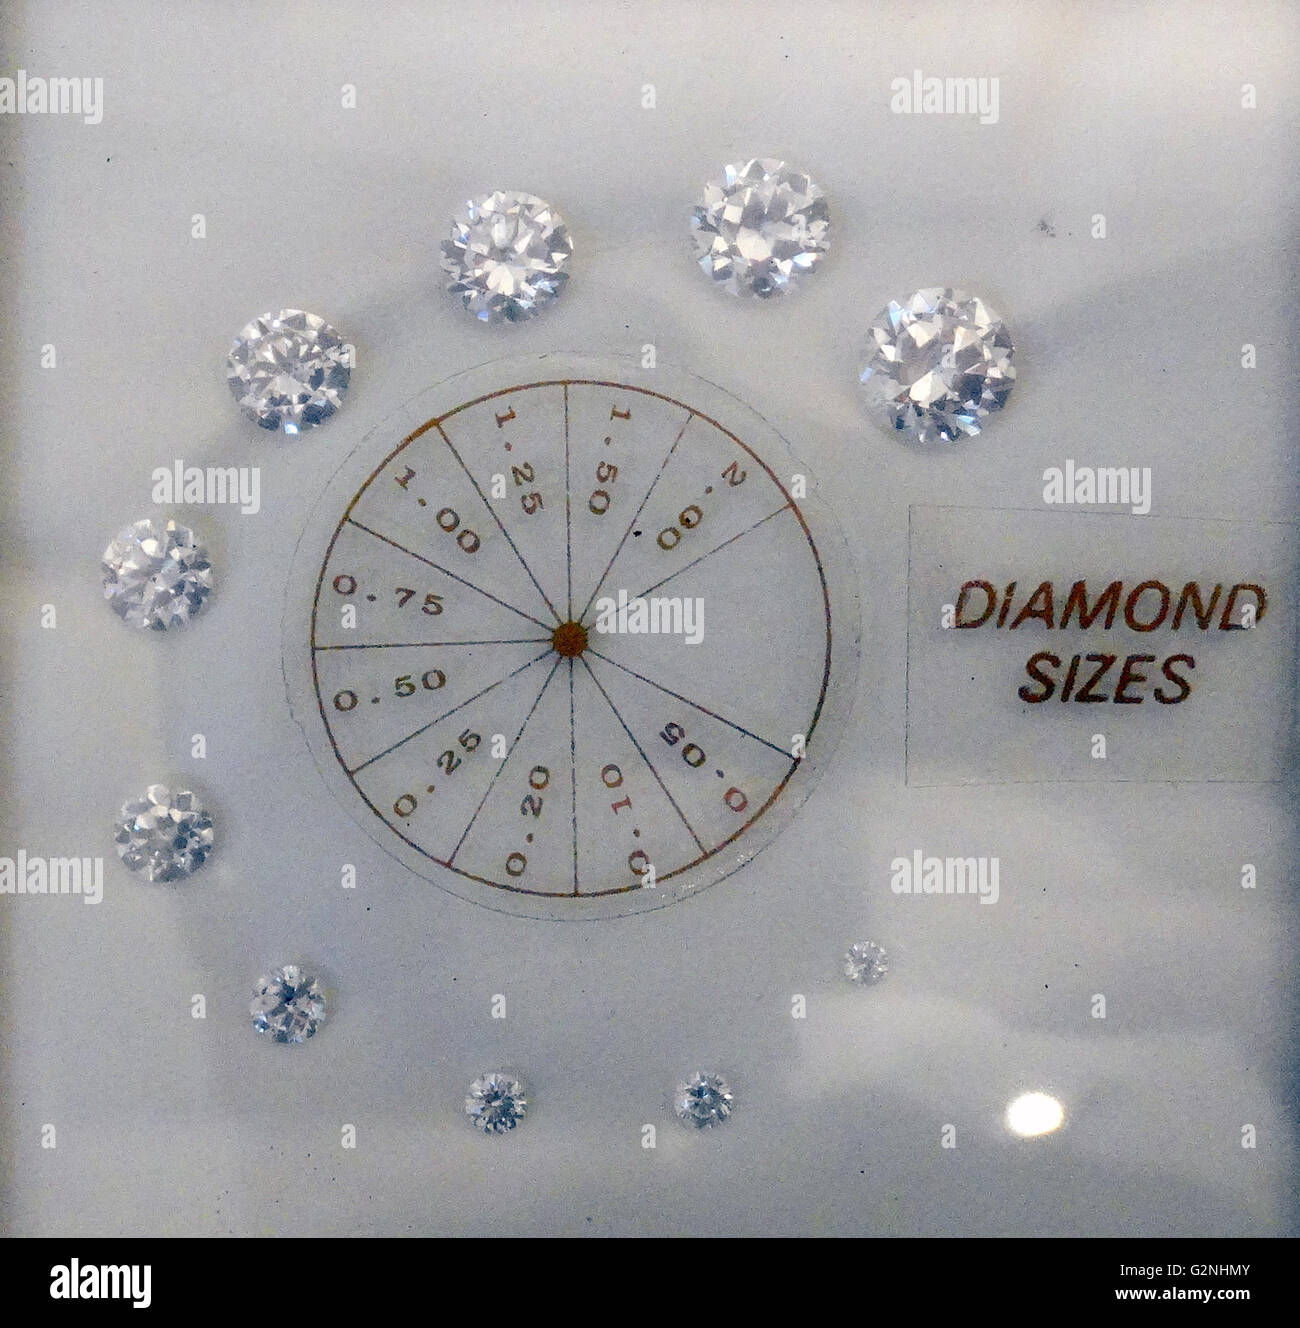 Tabla de tallas de diamantes desde 0,05 a 2,00 CT. Quilate es una unidad de masa igual a 200mg y se utiliza para la medición de piedras preciosas y perlas. Fecha de 2014 Foto de stock